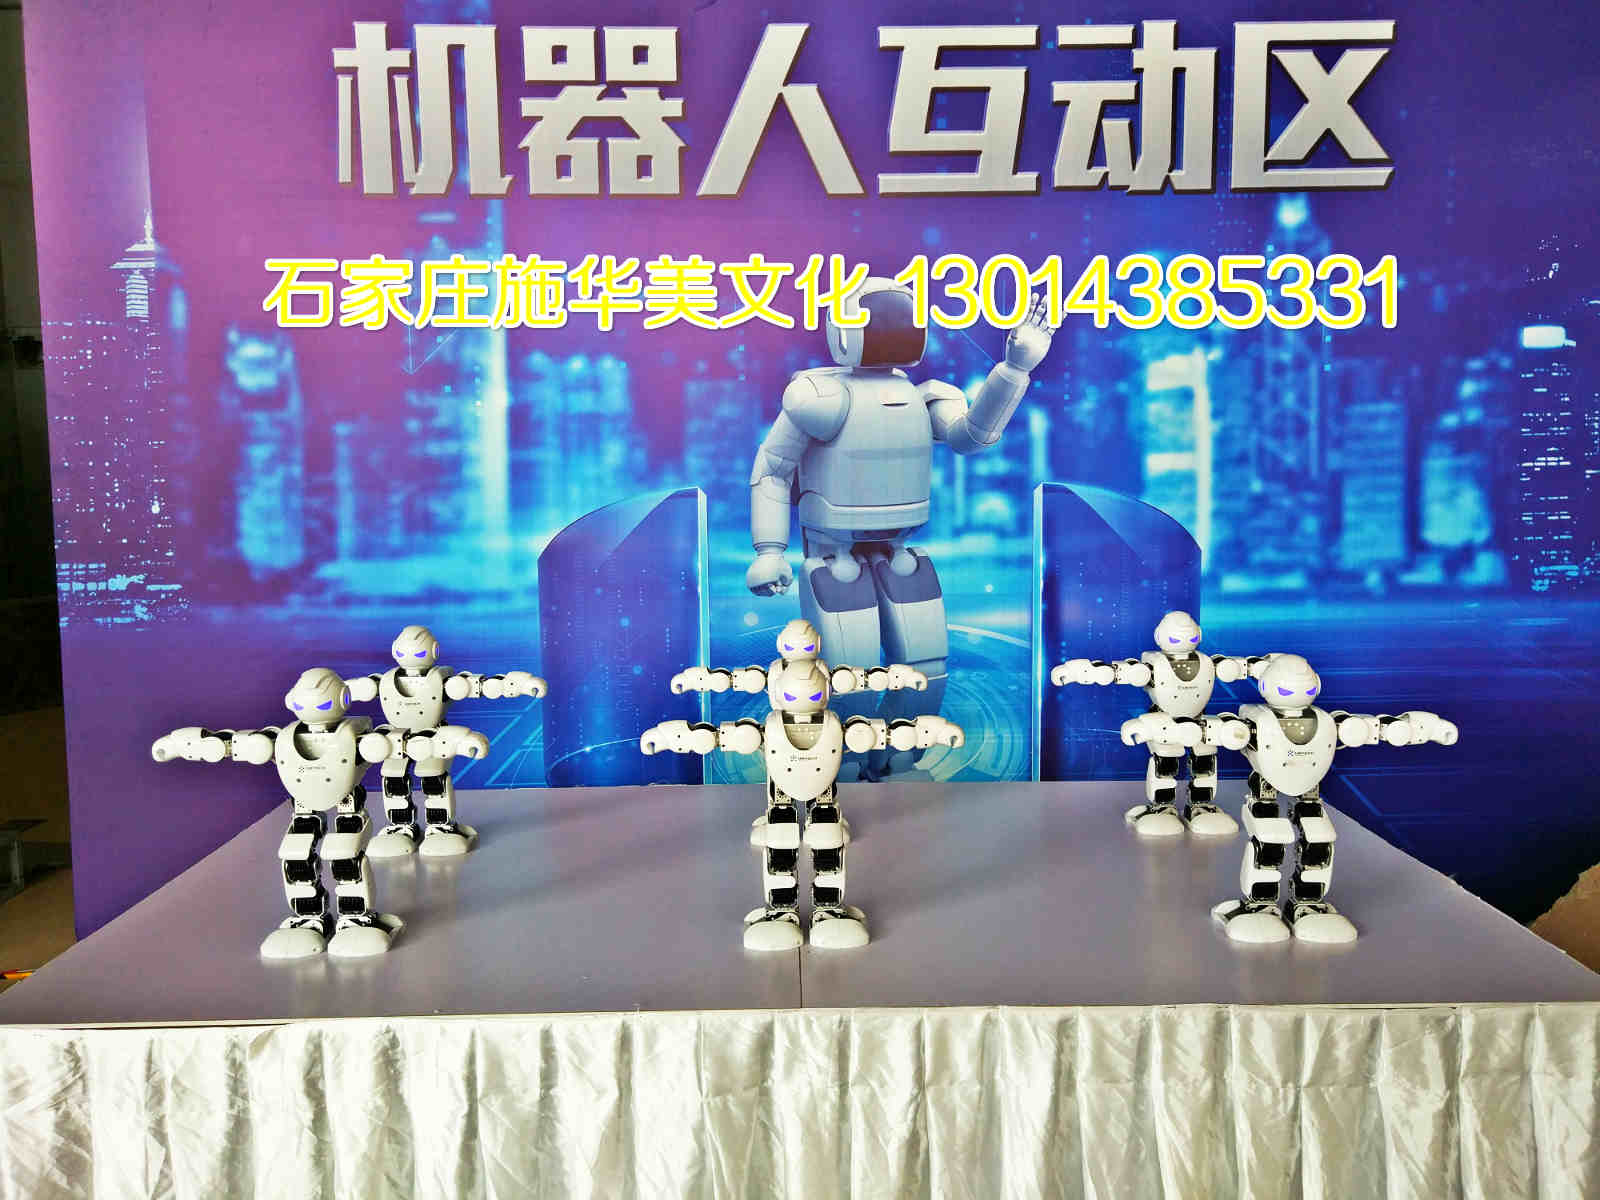 石家庄跳舞机器人互动